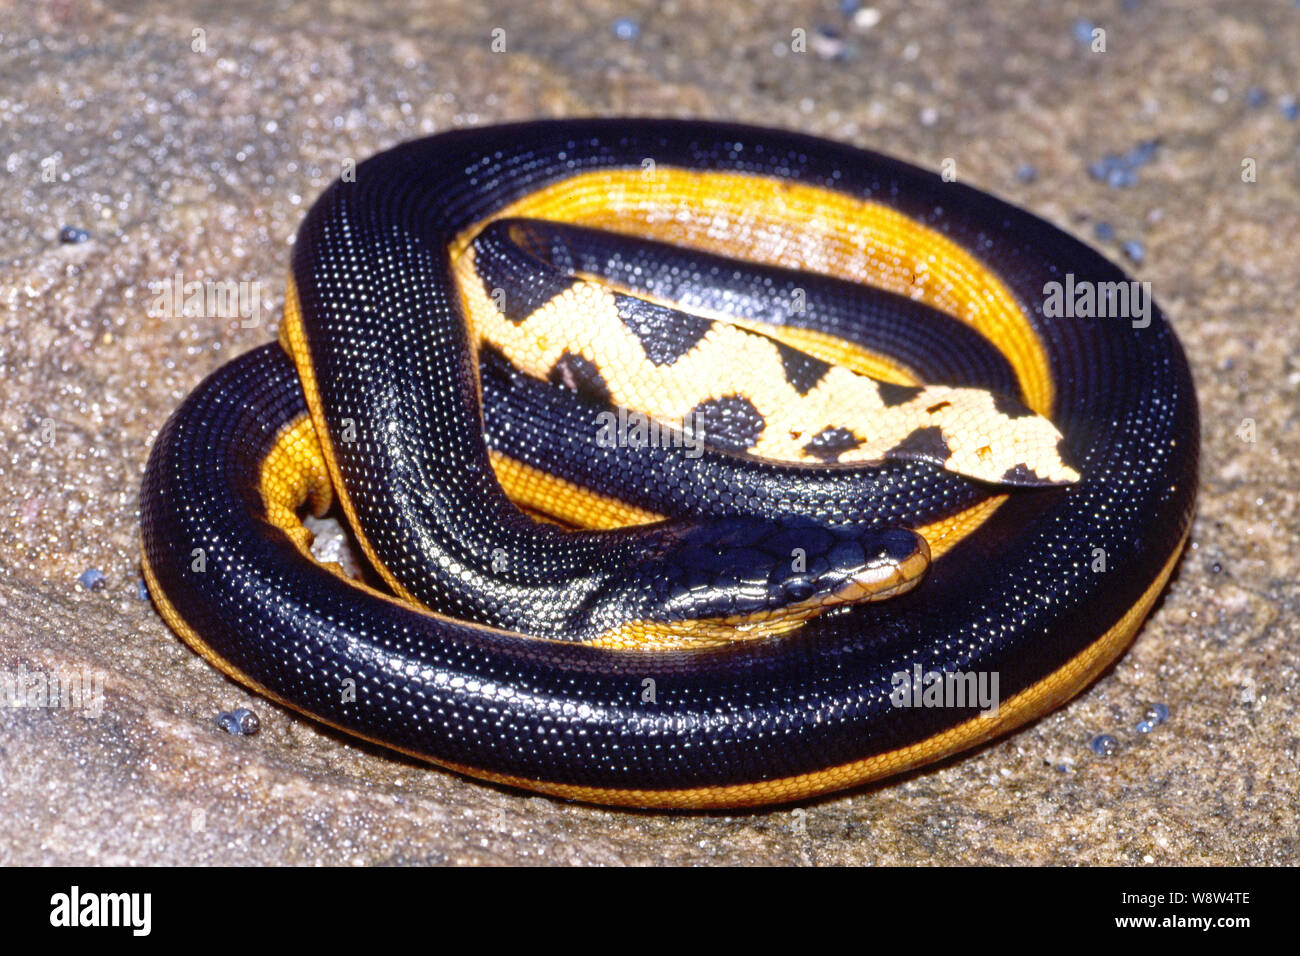 A becco giallo serpente del mare Foto Stock